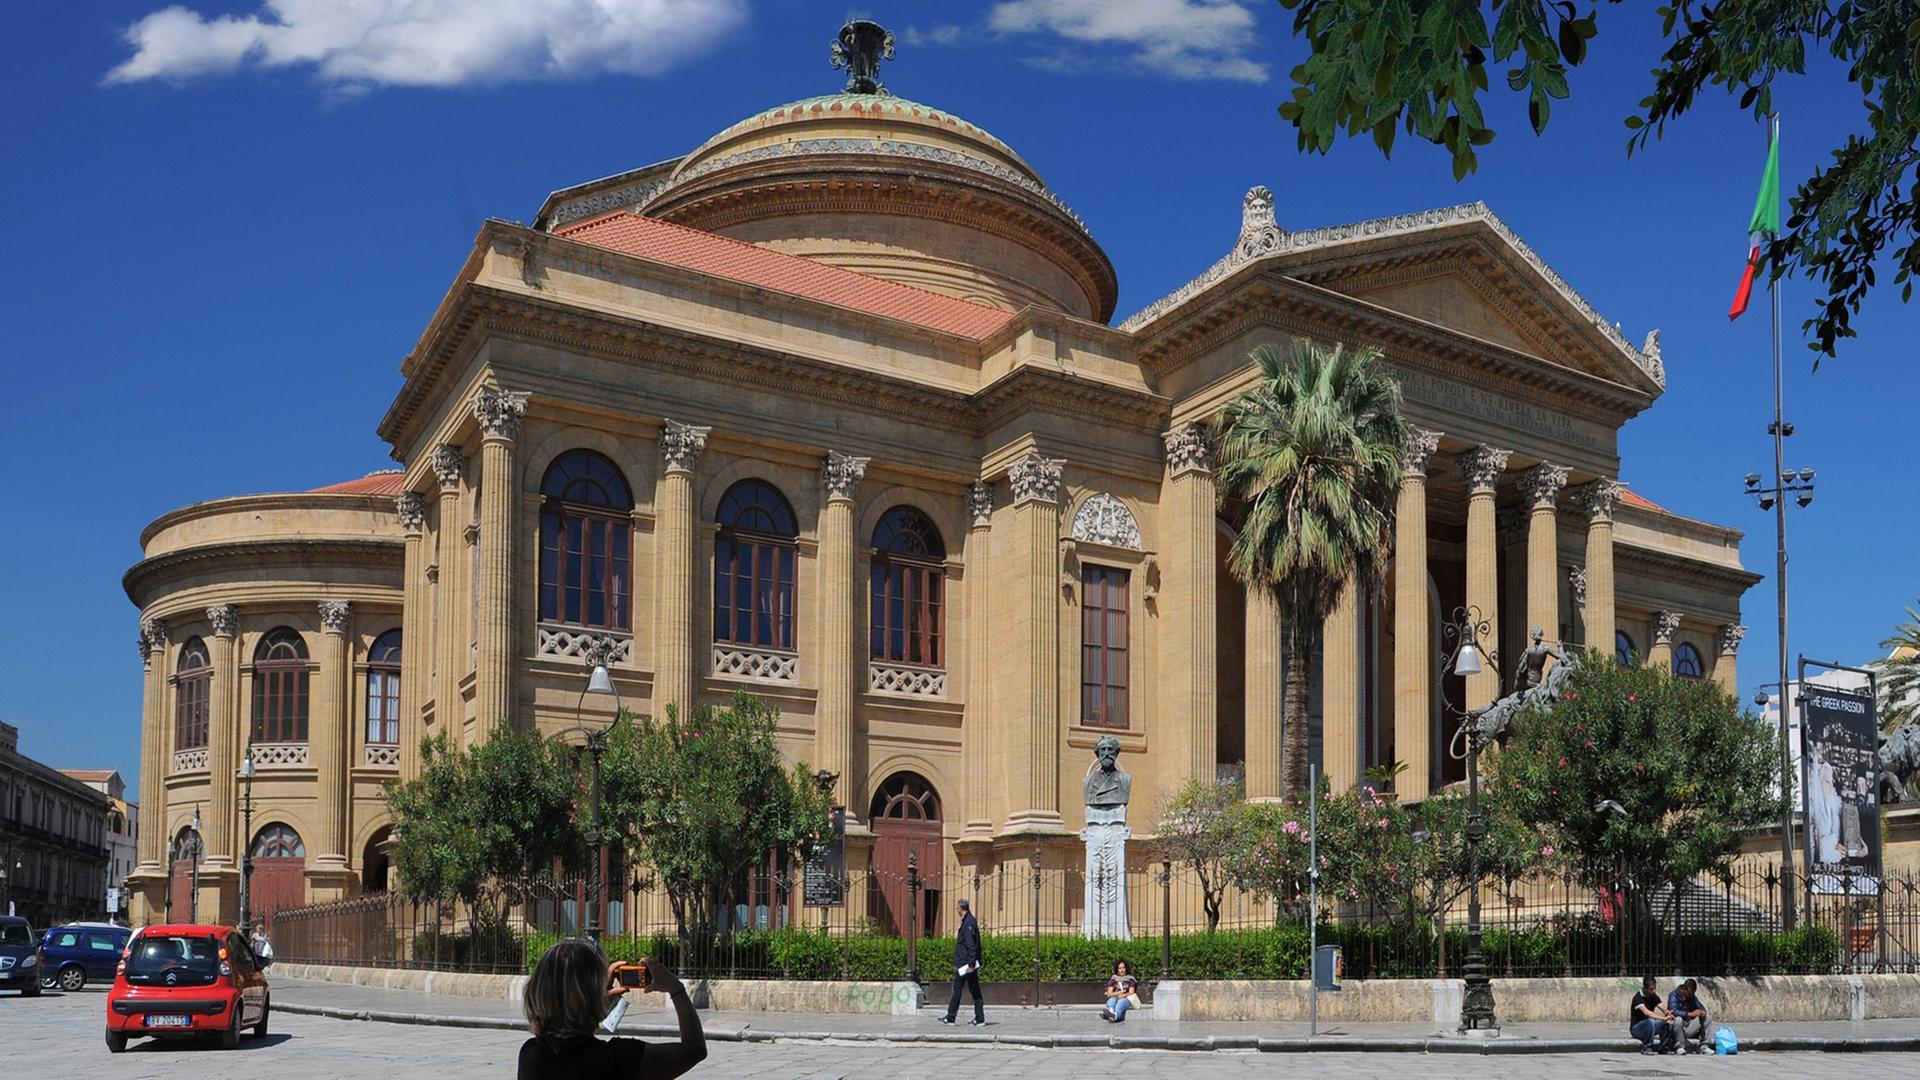 Das Teatro Massimo in Palermo zählt zu den bedeutendsten Theaterbauwerken Europas.